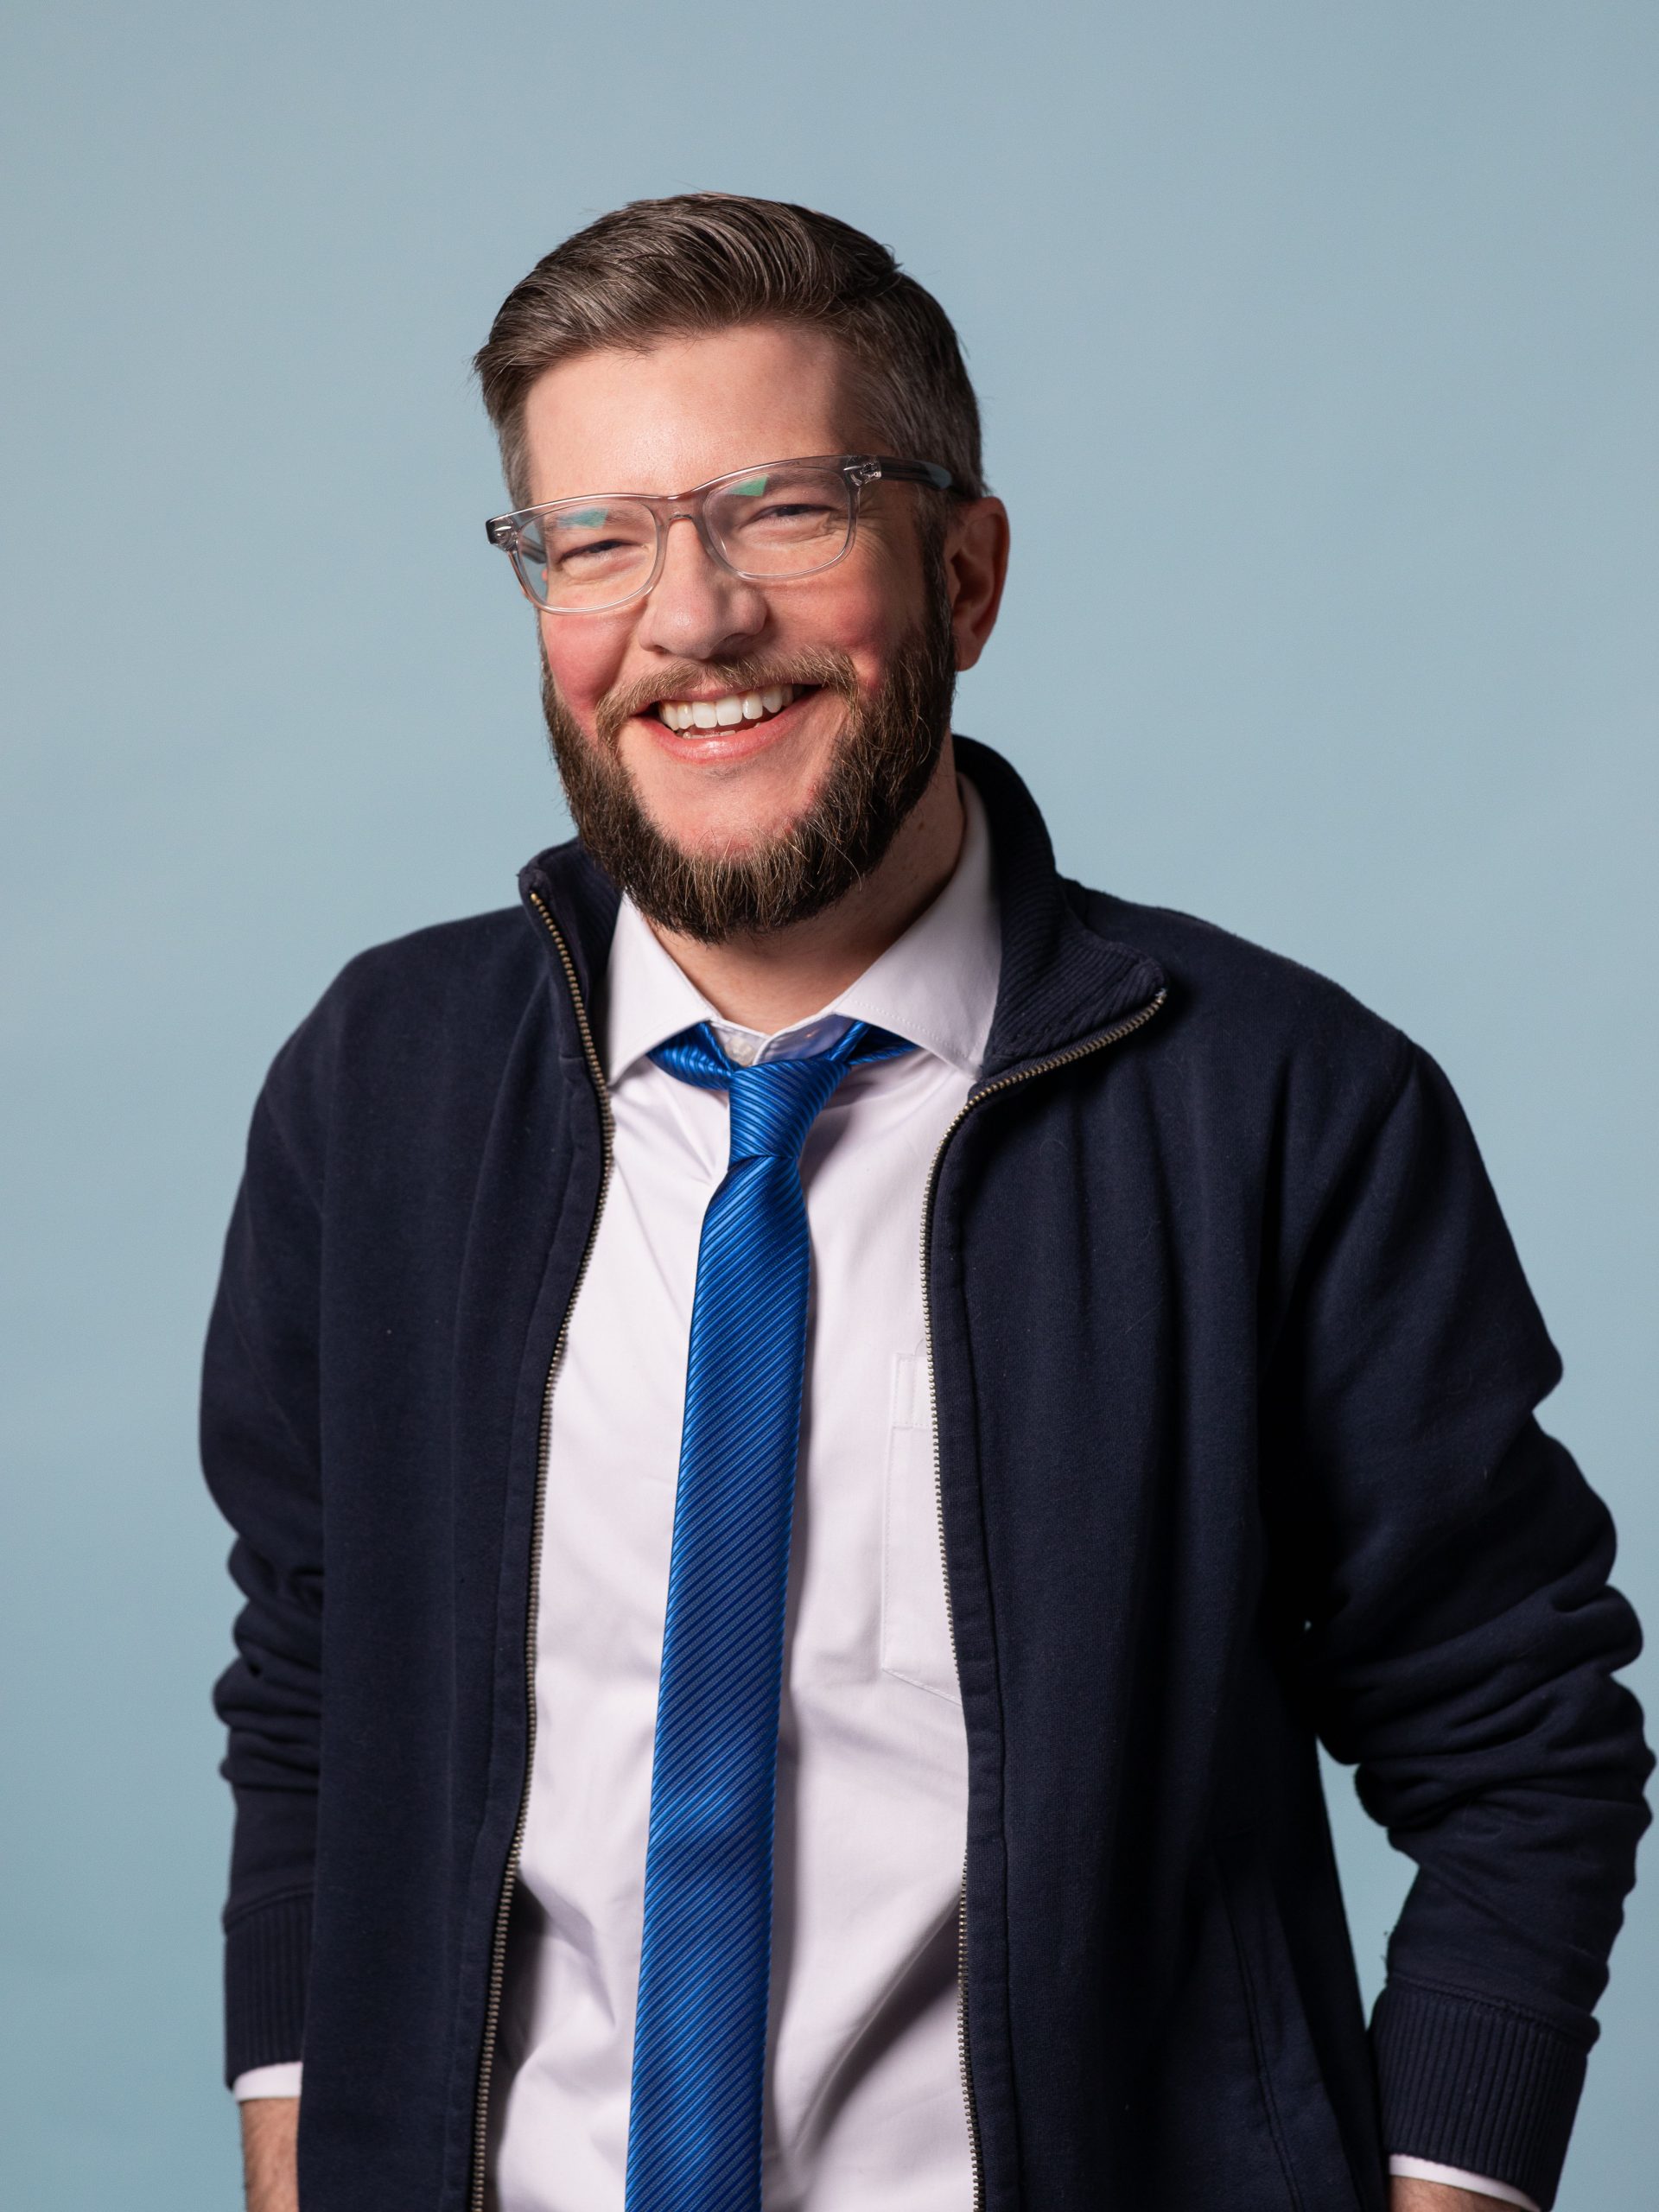 Ben Reynolds, Asher Agency Web Developer, wearing a blue tie